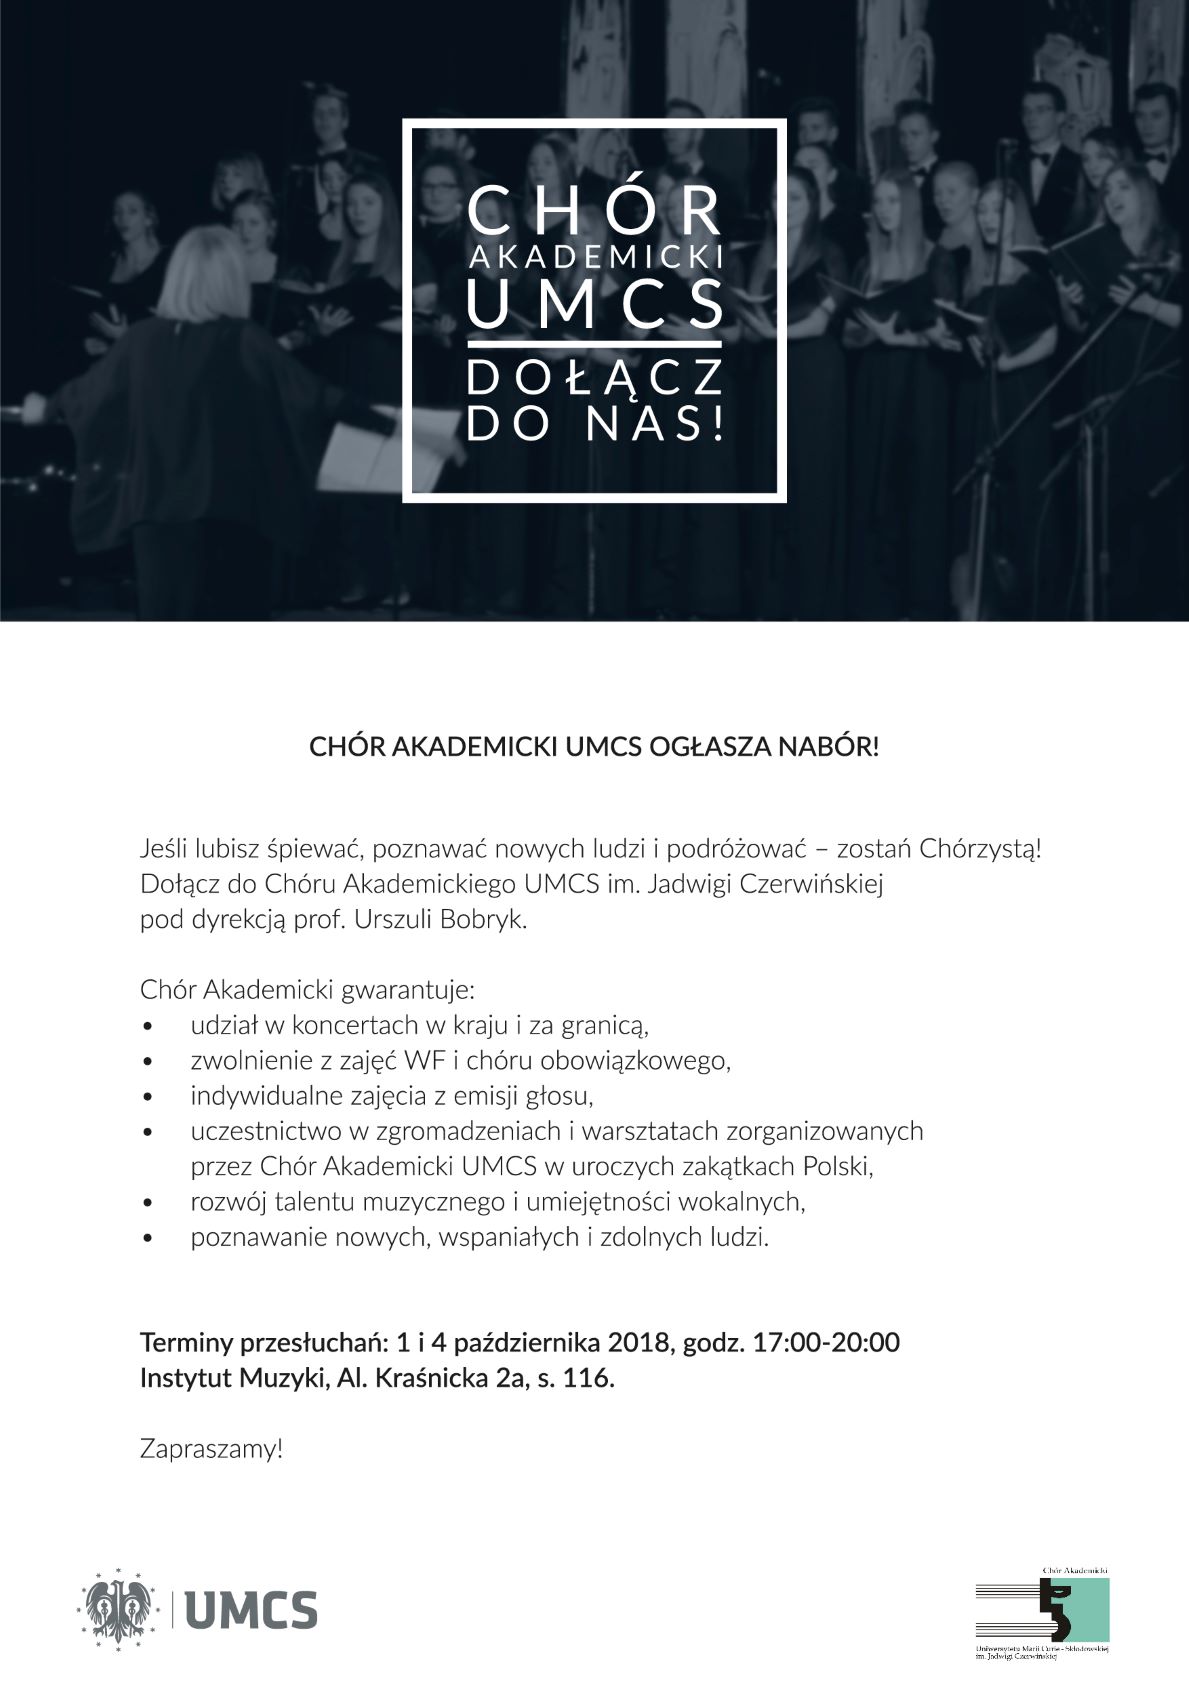 Chór UMCS nabór 2018 plakat (1).jpg